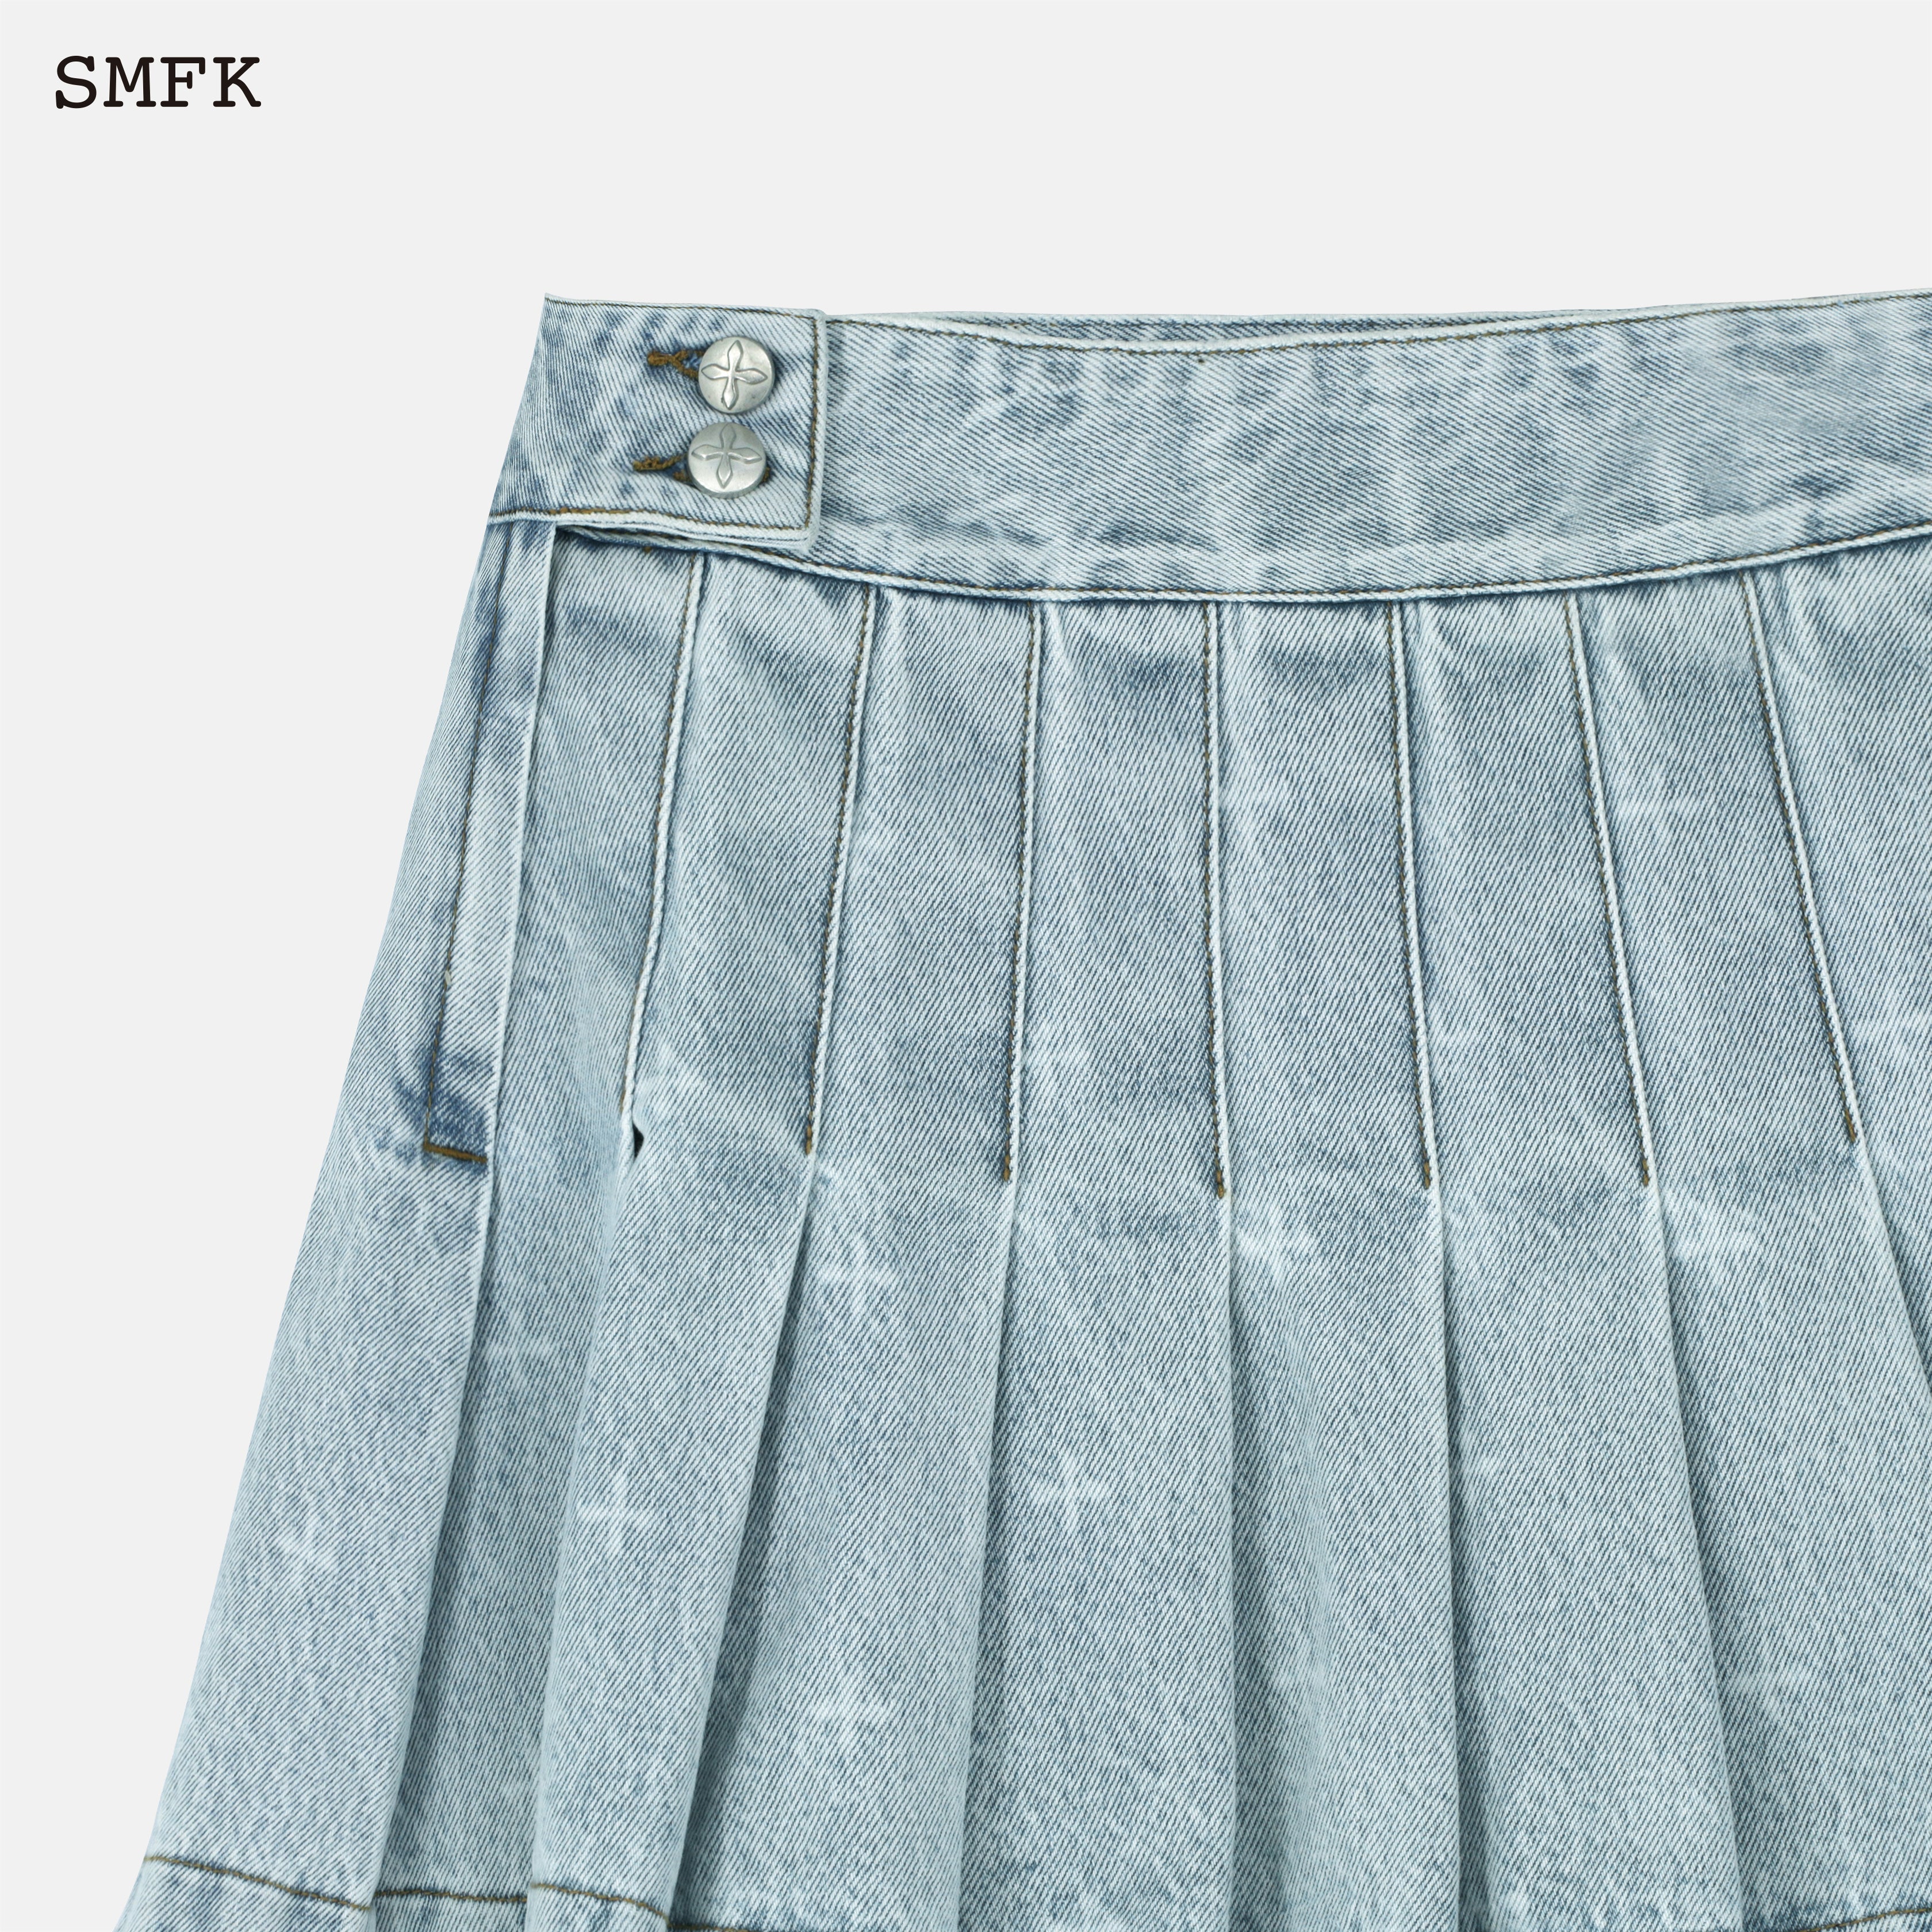 SMFK Women's Chao Hand-Painted Denim Skirt